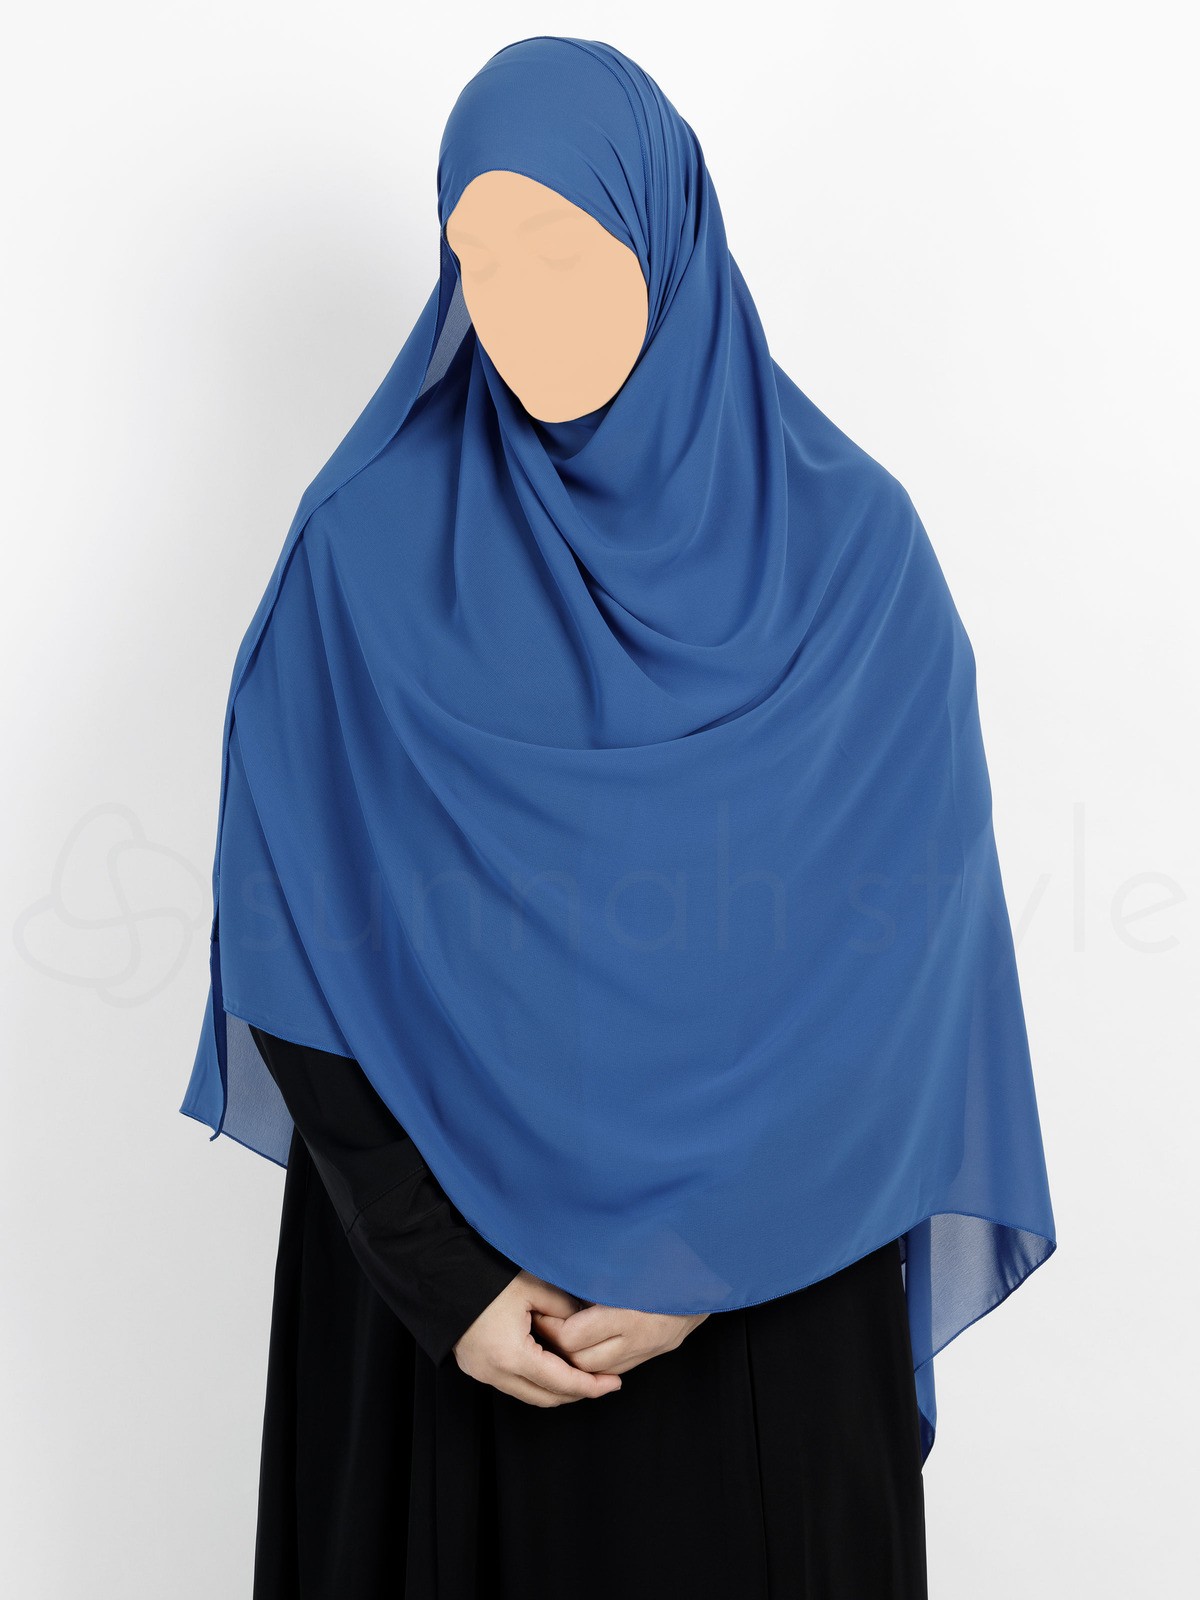 Sunnah Style - Essentials Shayla (Premium Chiffon) - XL (Blue Jay)